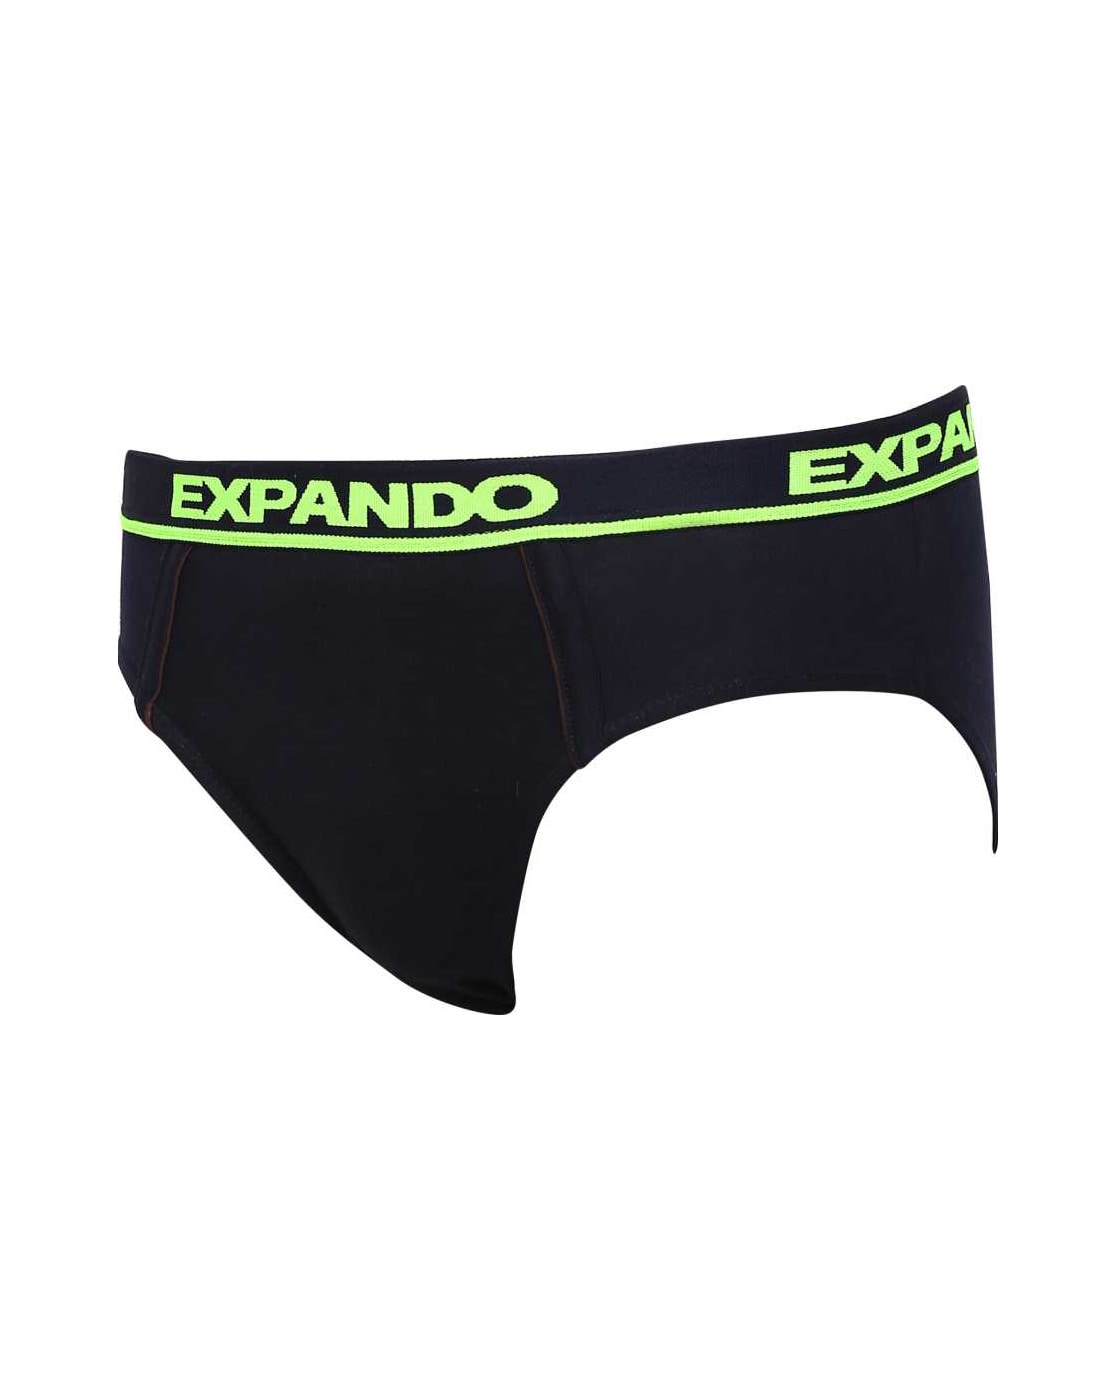 Rupa Expendo Brief Underwear